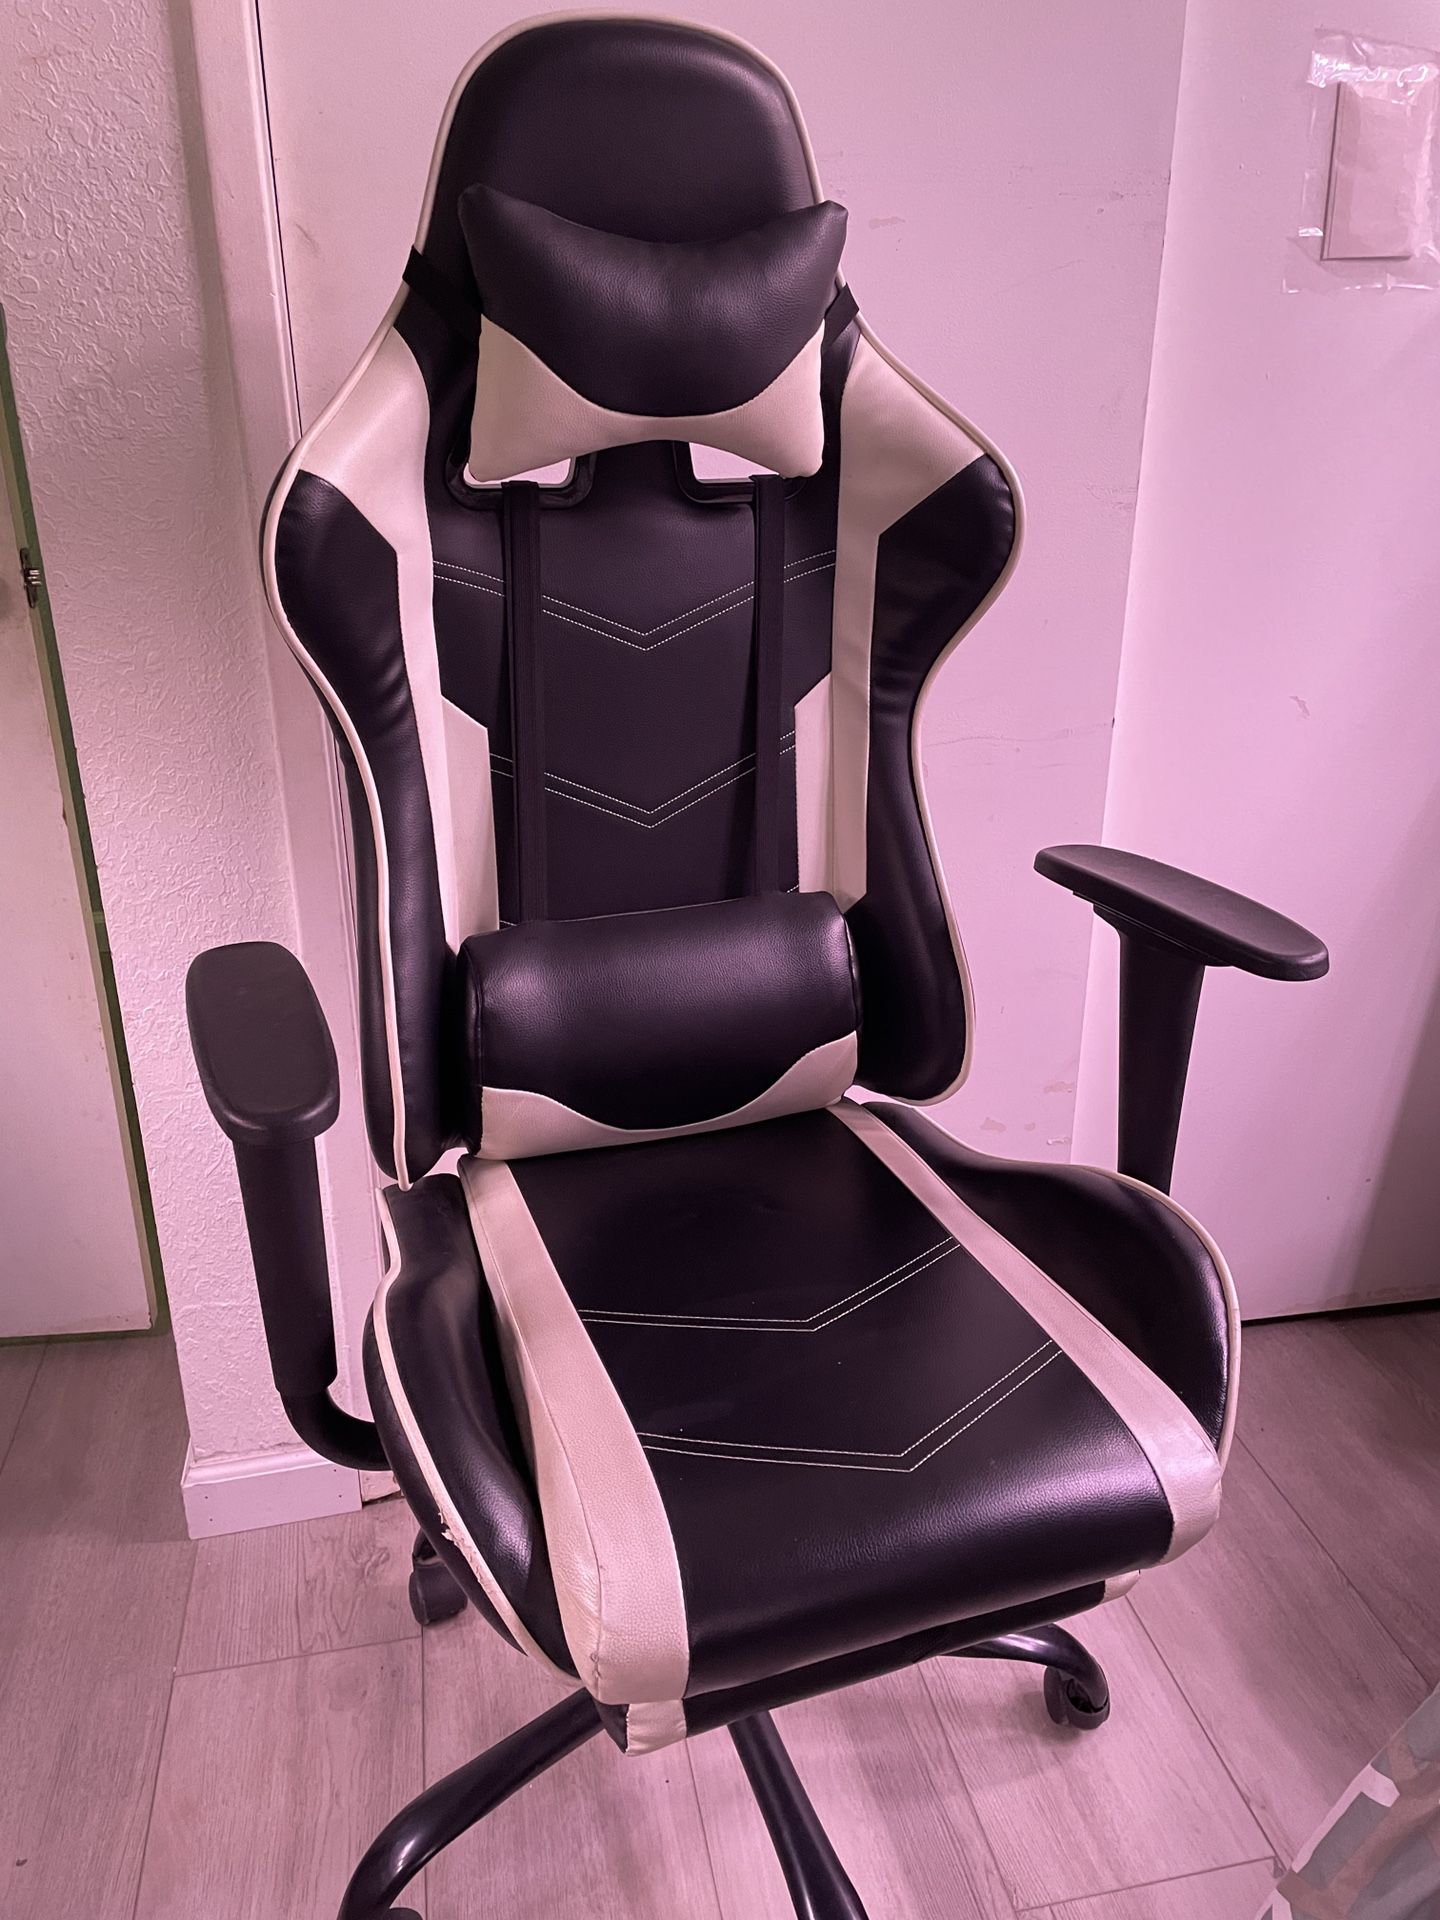 Gamer chair (Black & White)